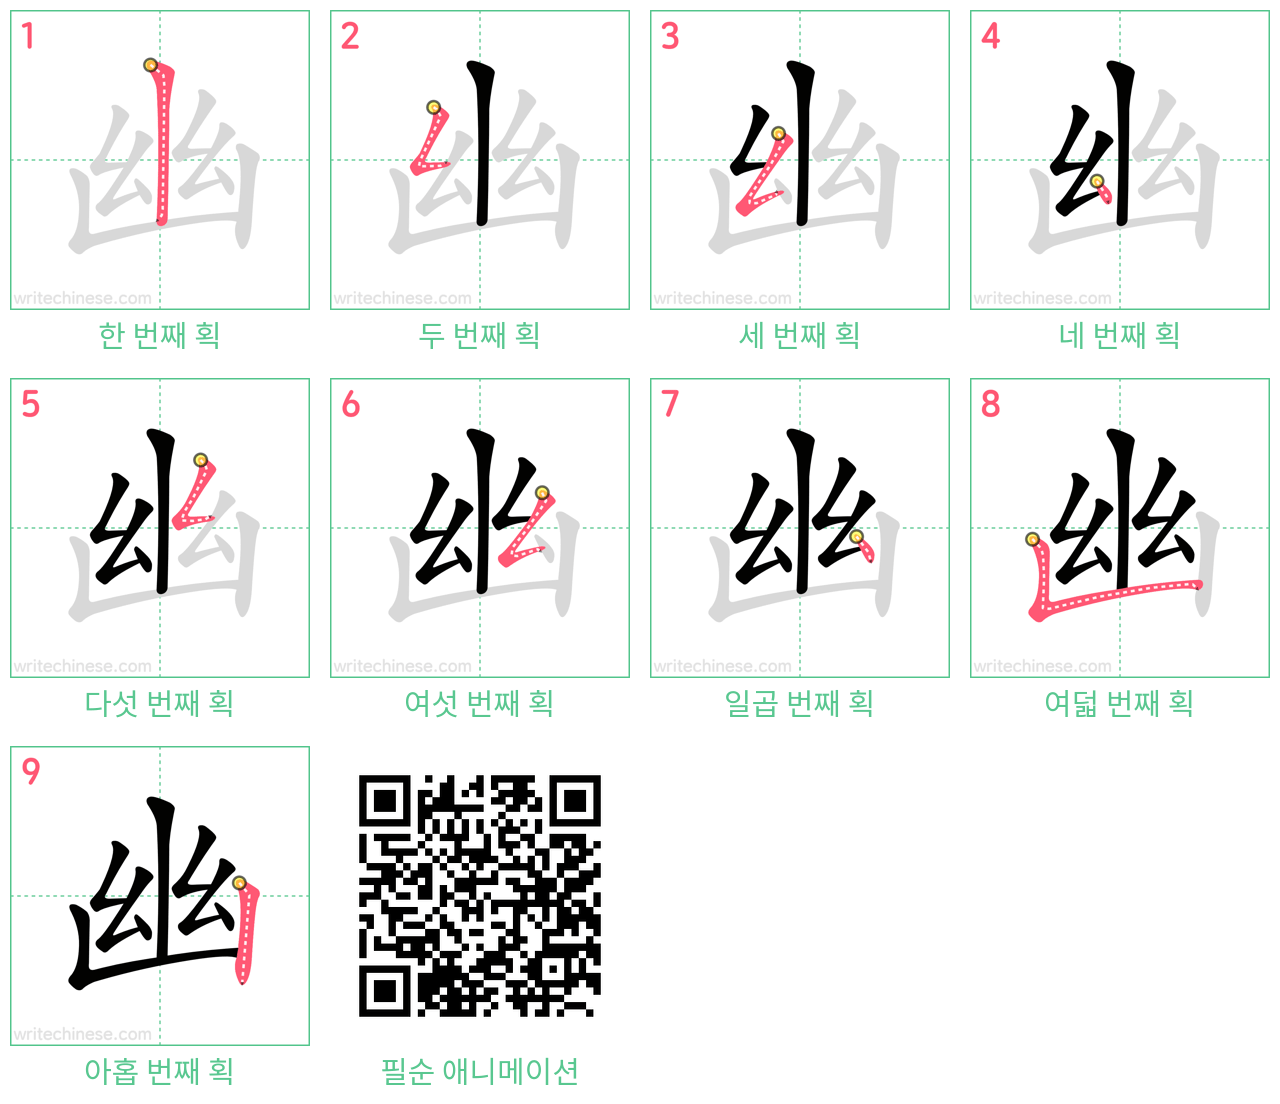 幽 step-by-step stroke order diagrams